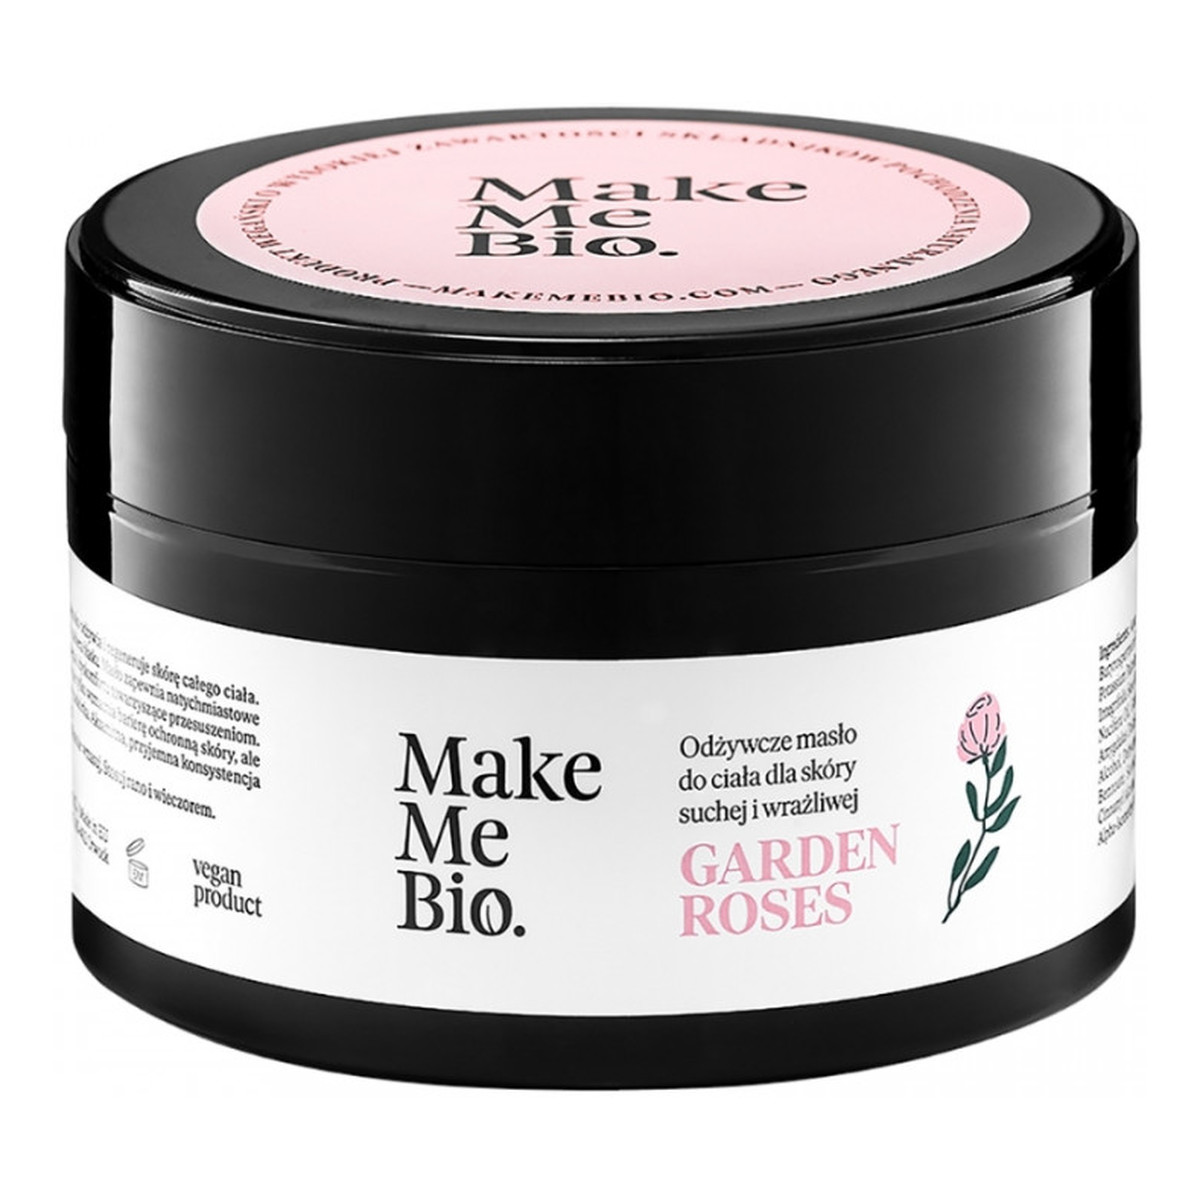 Make Me Bio Garden Roses Odżywcze masło do ciała dla skóry suchej i wrażliwej 230ml